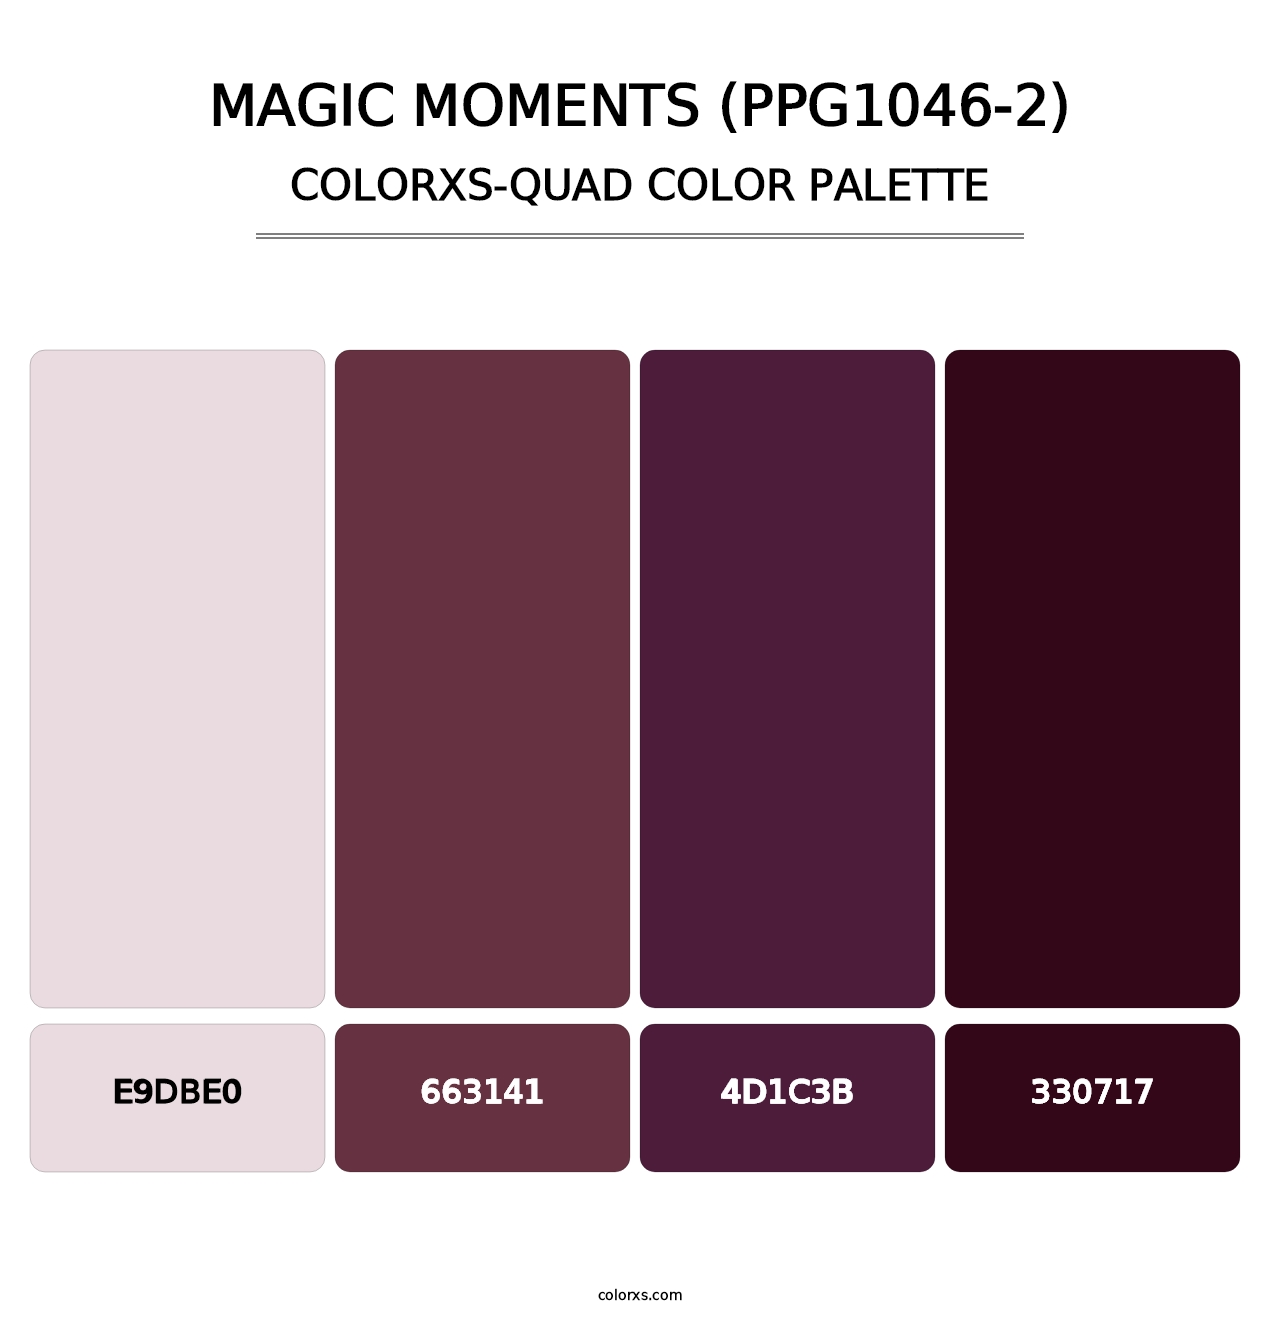 Magic Moments (PPG1046-2) - Colorxs Quad Palette